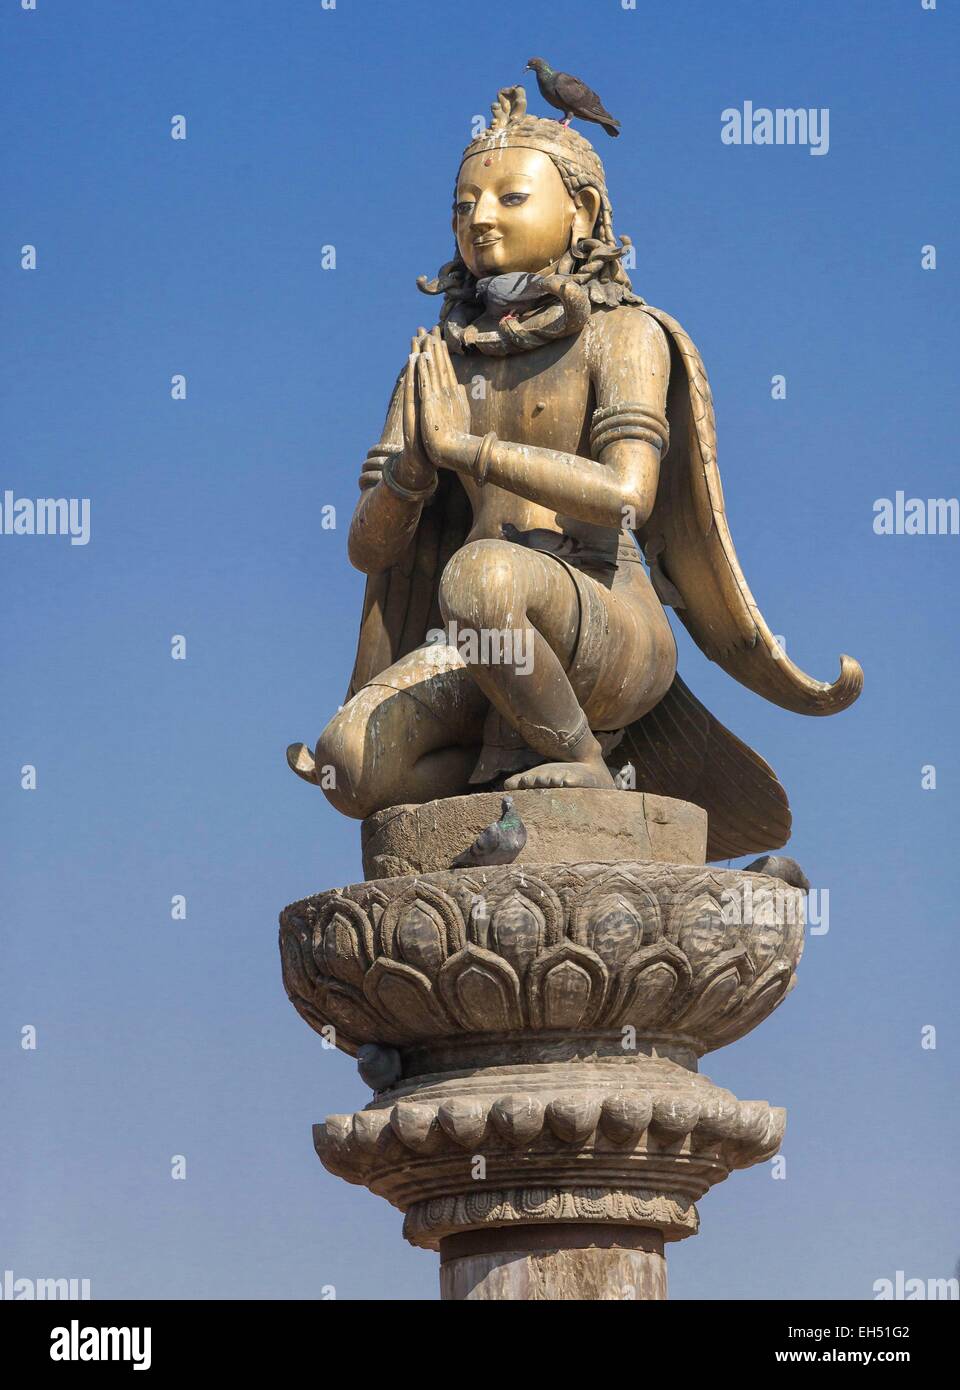 Le Népal, vallée de Kathmandu, Patan, Durbar Square, inscrite au Patrimoine Mondial de l'UNESCO, colonne soutenant le Garuda birdman Banque D'Images